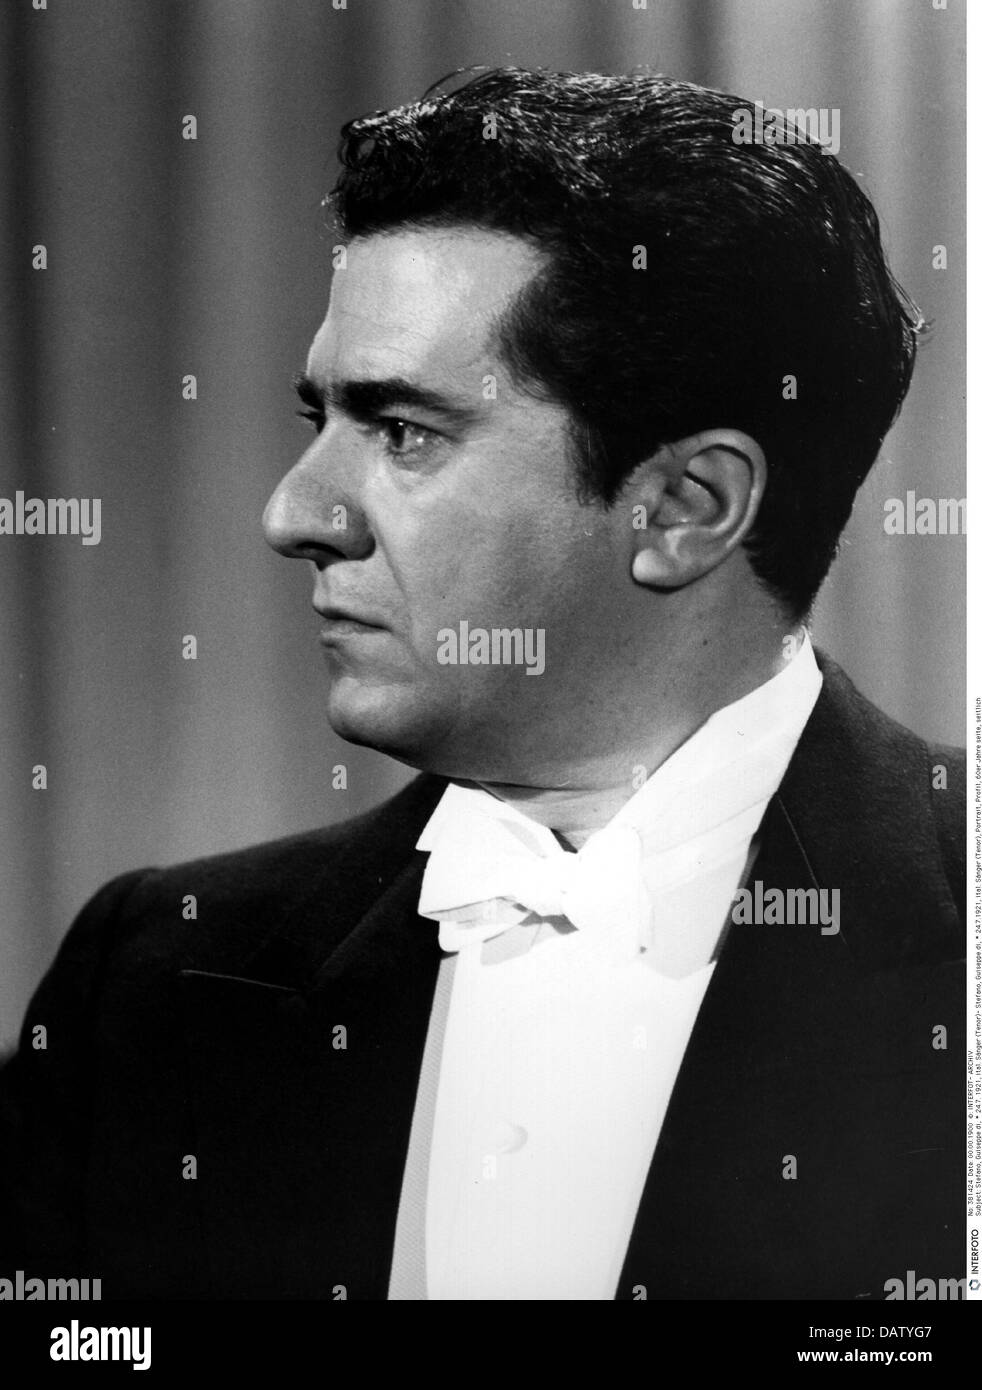 Stefano, Giuseppe Di, 24.7.1921 - 3.3.2008, chanteur italien (ténor opérique), portrait, vue latérale, années 60, , Banque D'Images